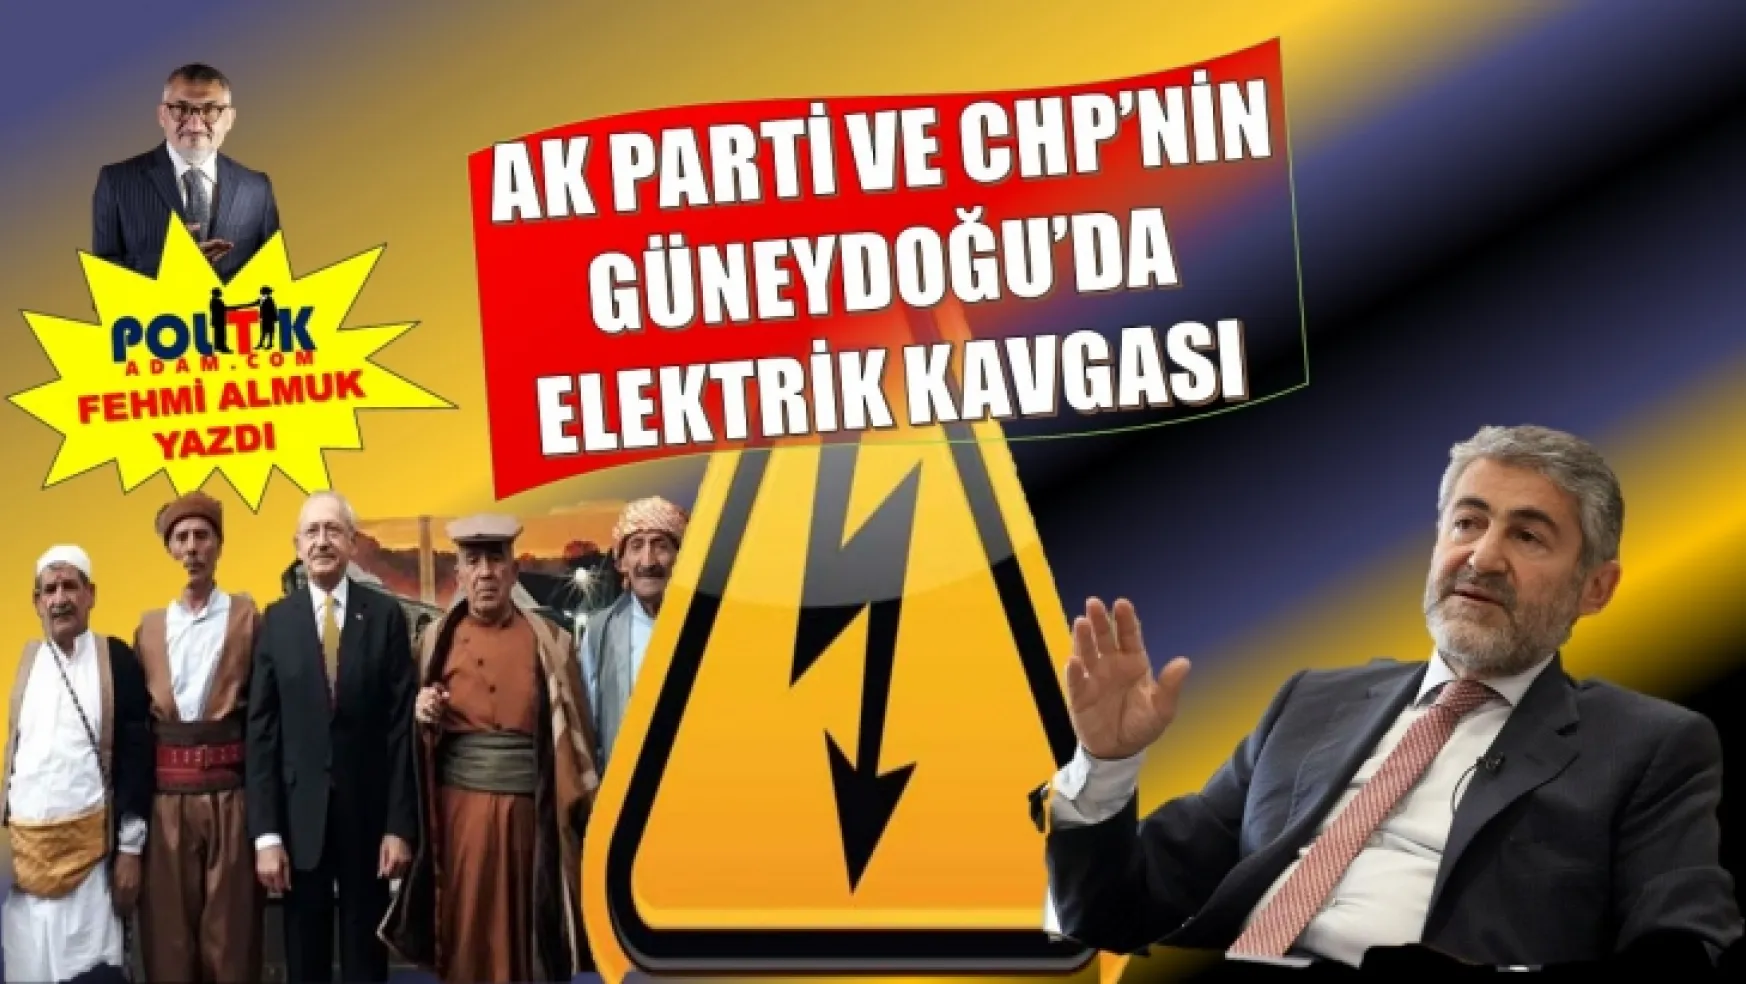 Ak Parti ve CHP'yi Güneydoğu'da Elektrik Çarptı